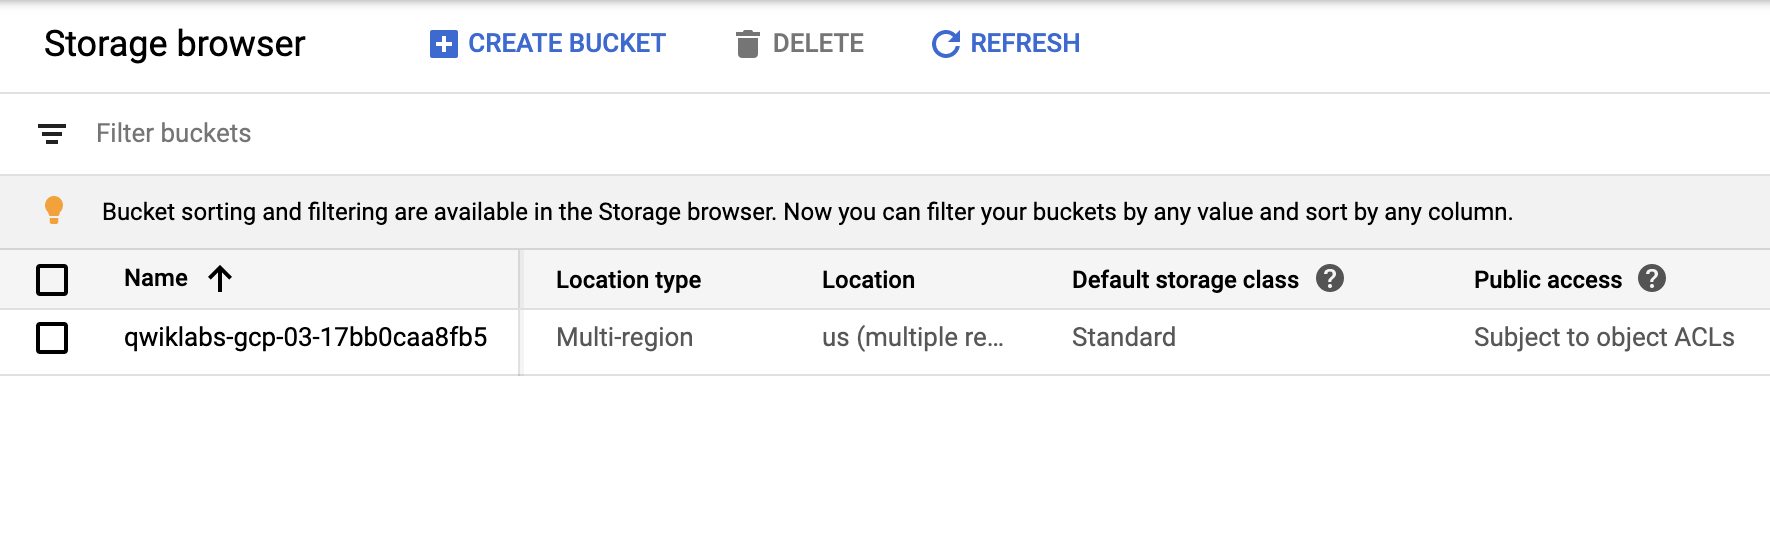 Browser Storage berisi bucket yang relevan